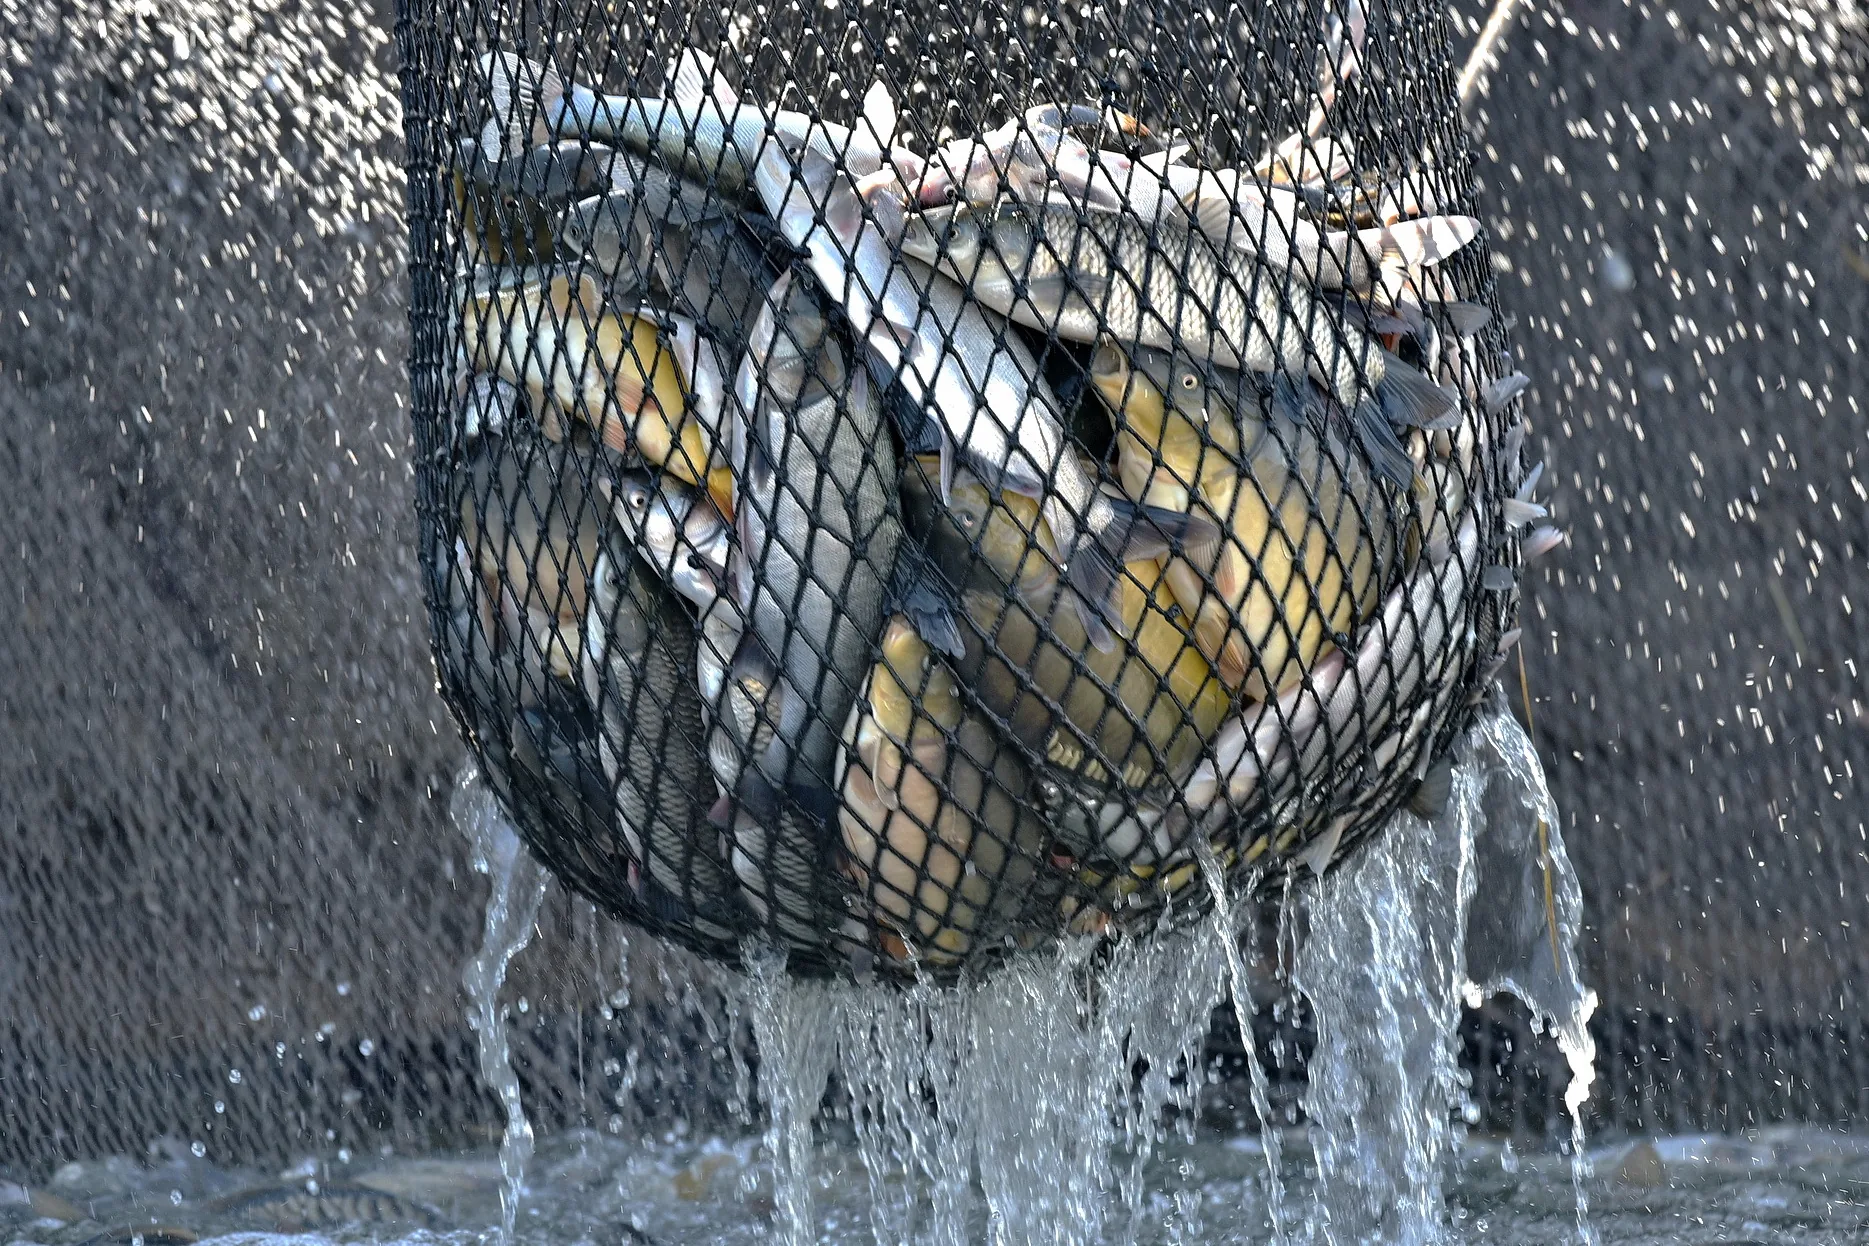 Puna mreža ulovljene ribe koja se podiže i iz koje curi voda.